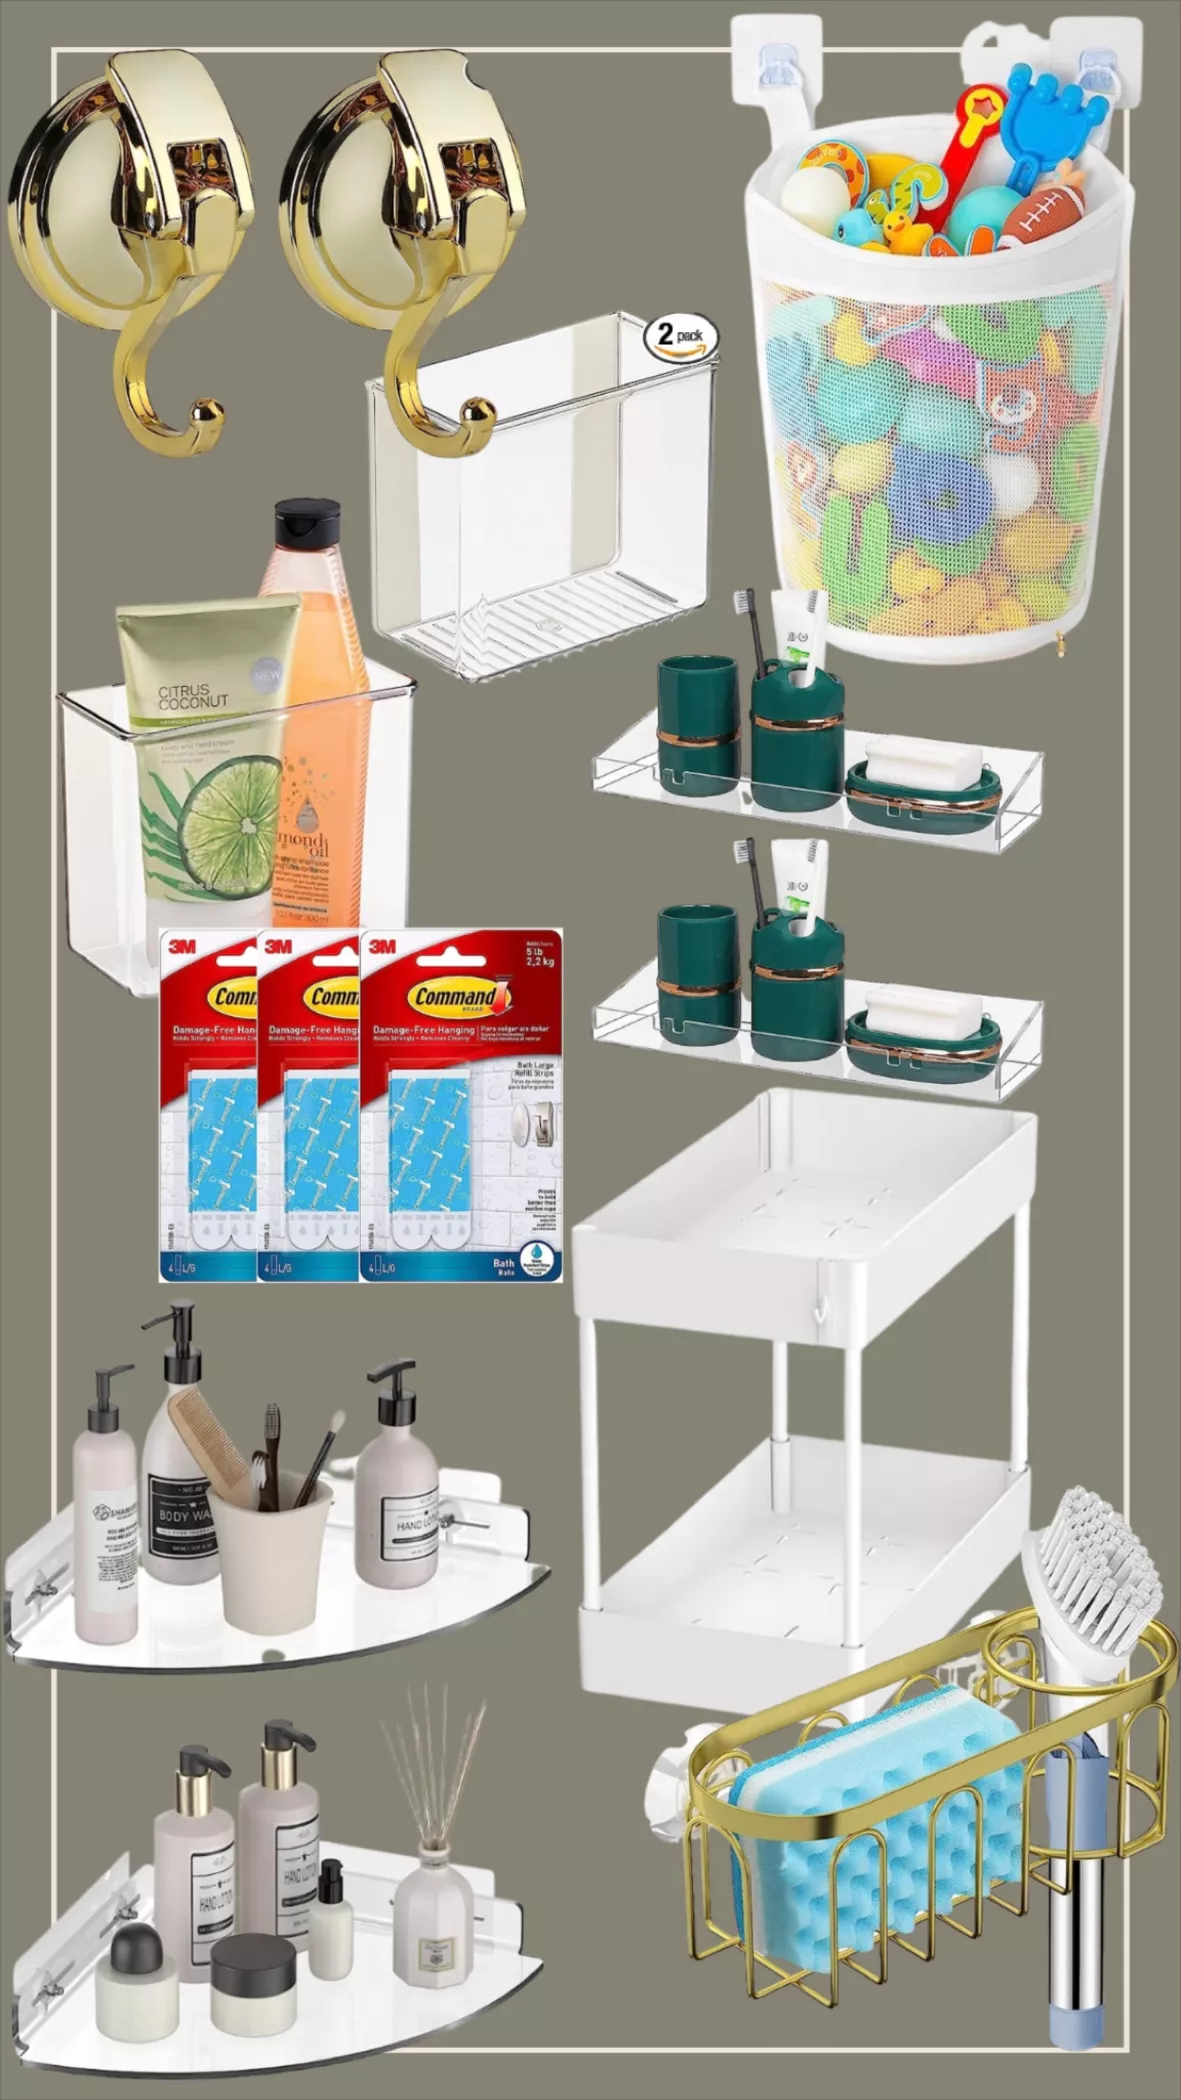 Vdomus 2 Pack Acrylic Bathroom Shelves, No Drilling Adhesive Bathroom